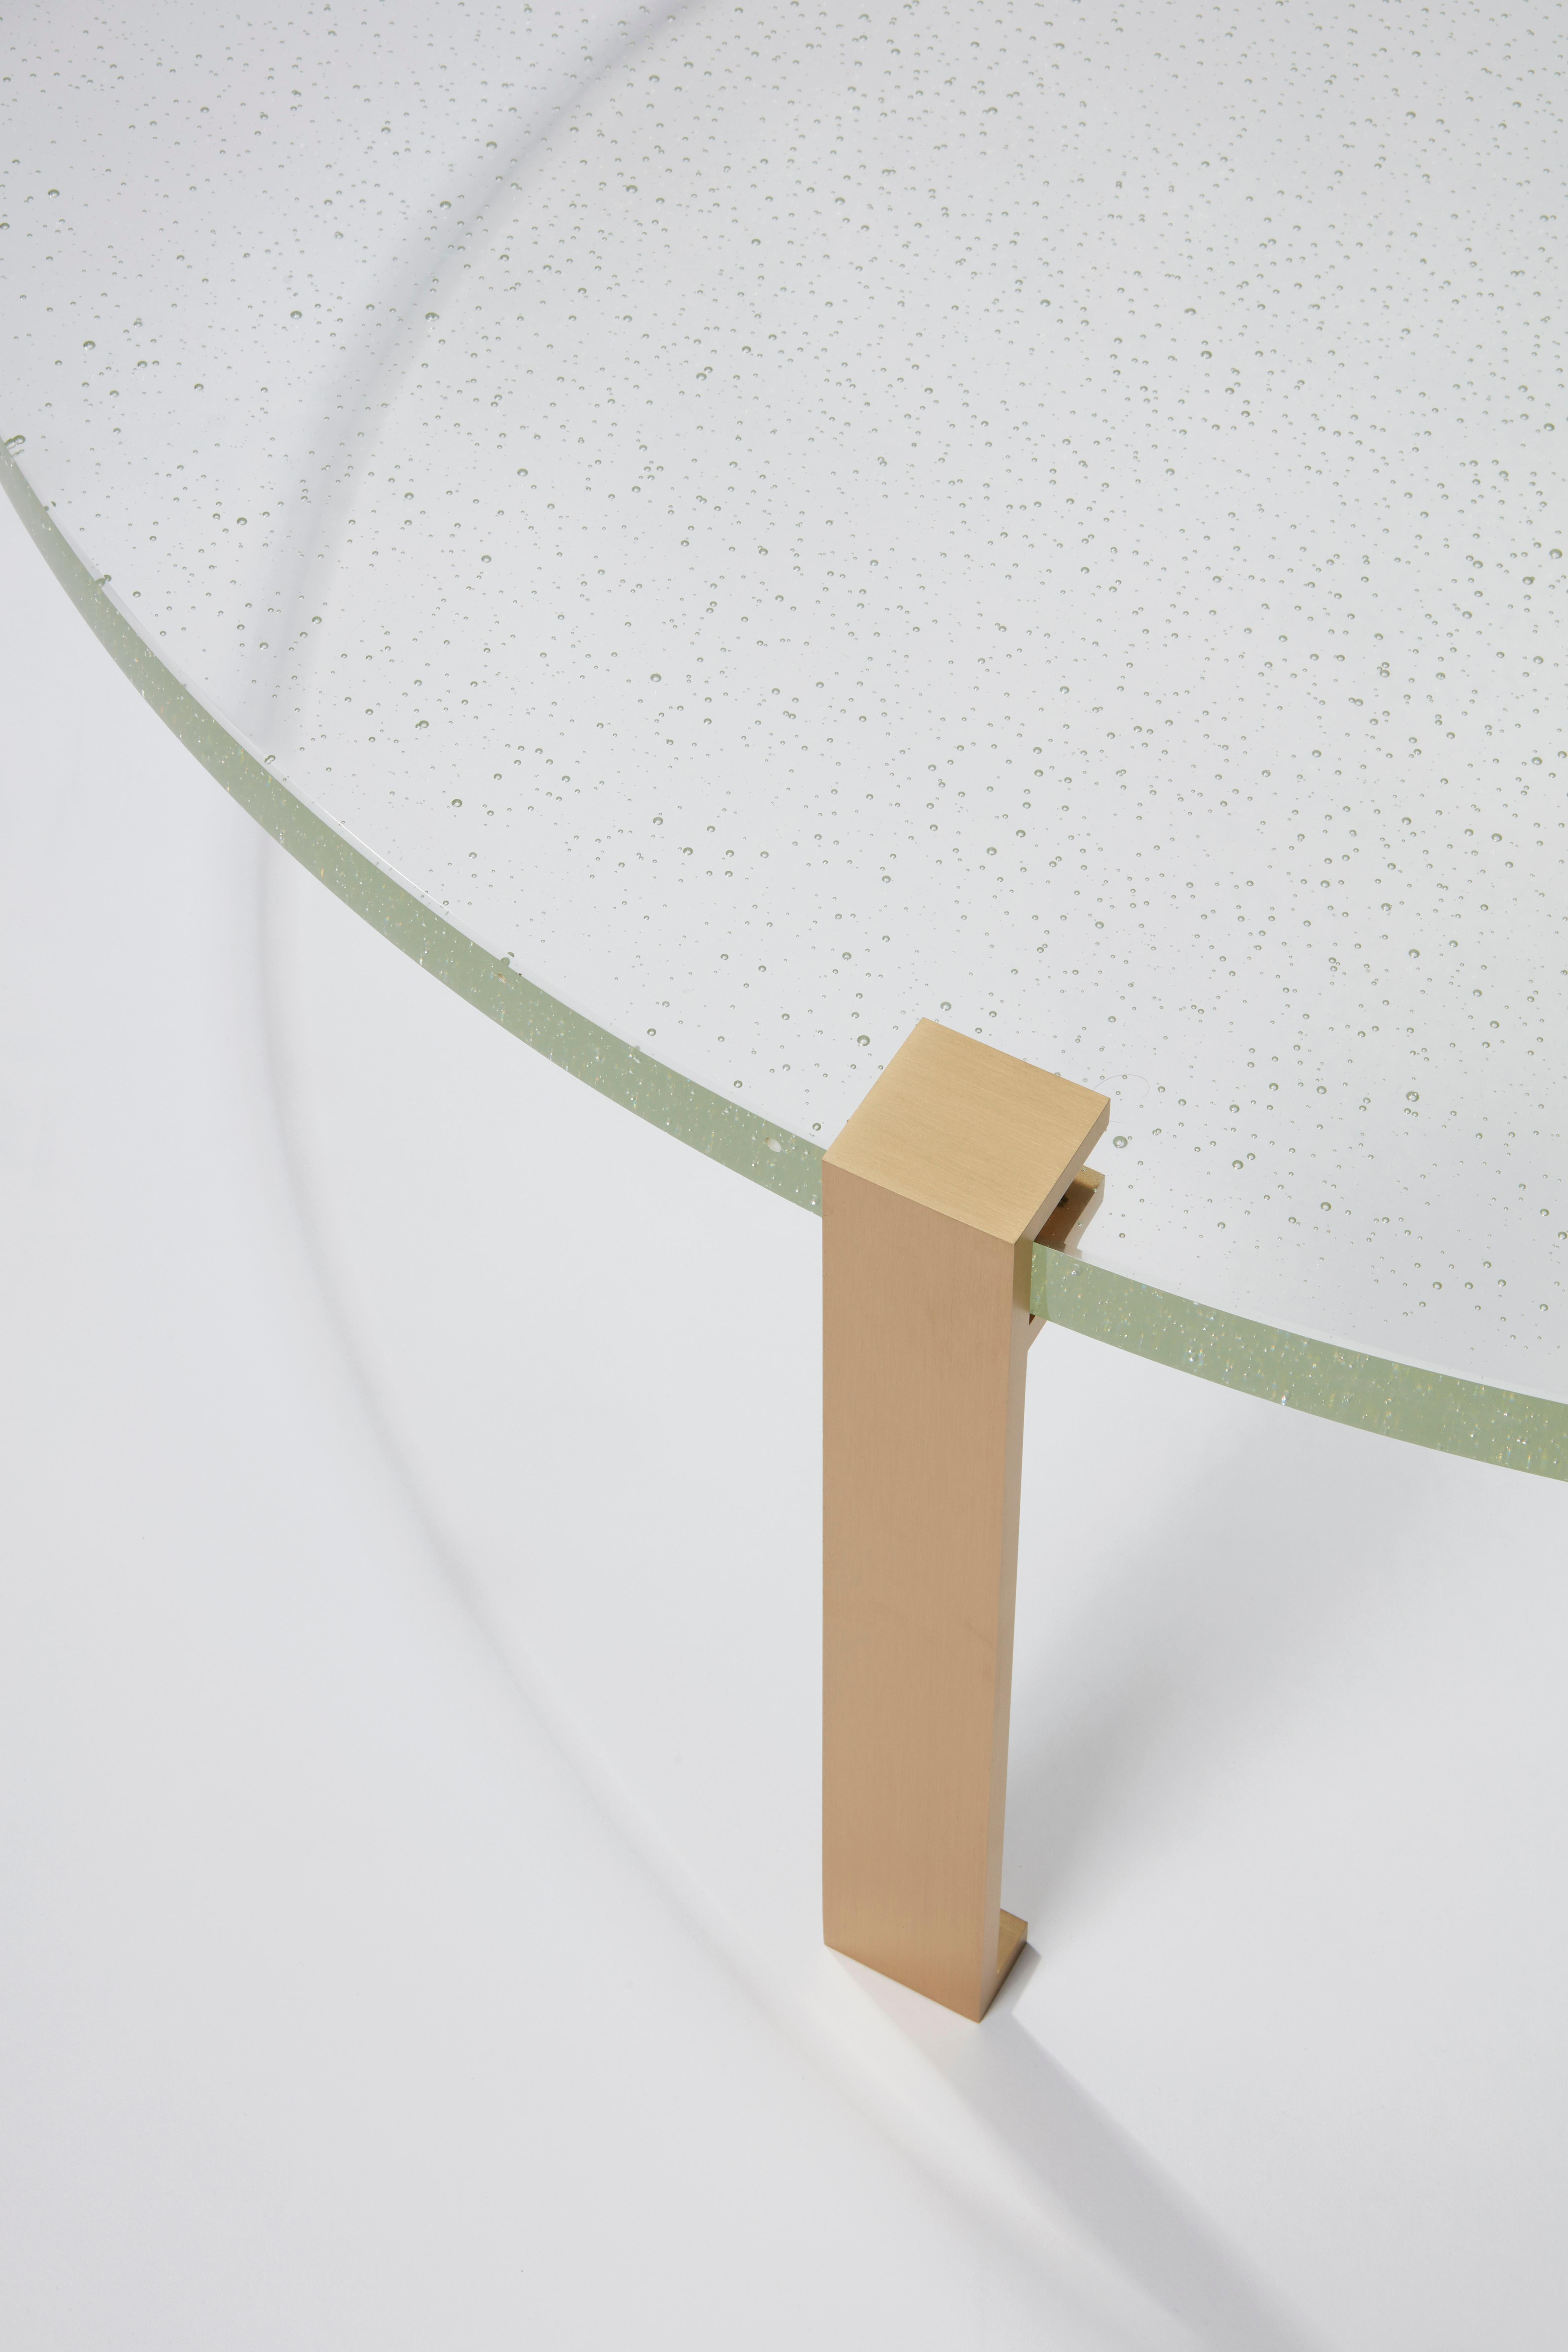 Table basse en verre avec pieds en laiton satiété, De la collection Abstractions colorées d'Hervé Langlais en 2016 pour la Galerie Negropontes. Dans cette Collectional, Hervé Langlais souligne le lien étroit entre l'art et l'artisanat, ainsi que le